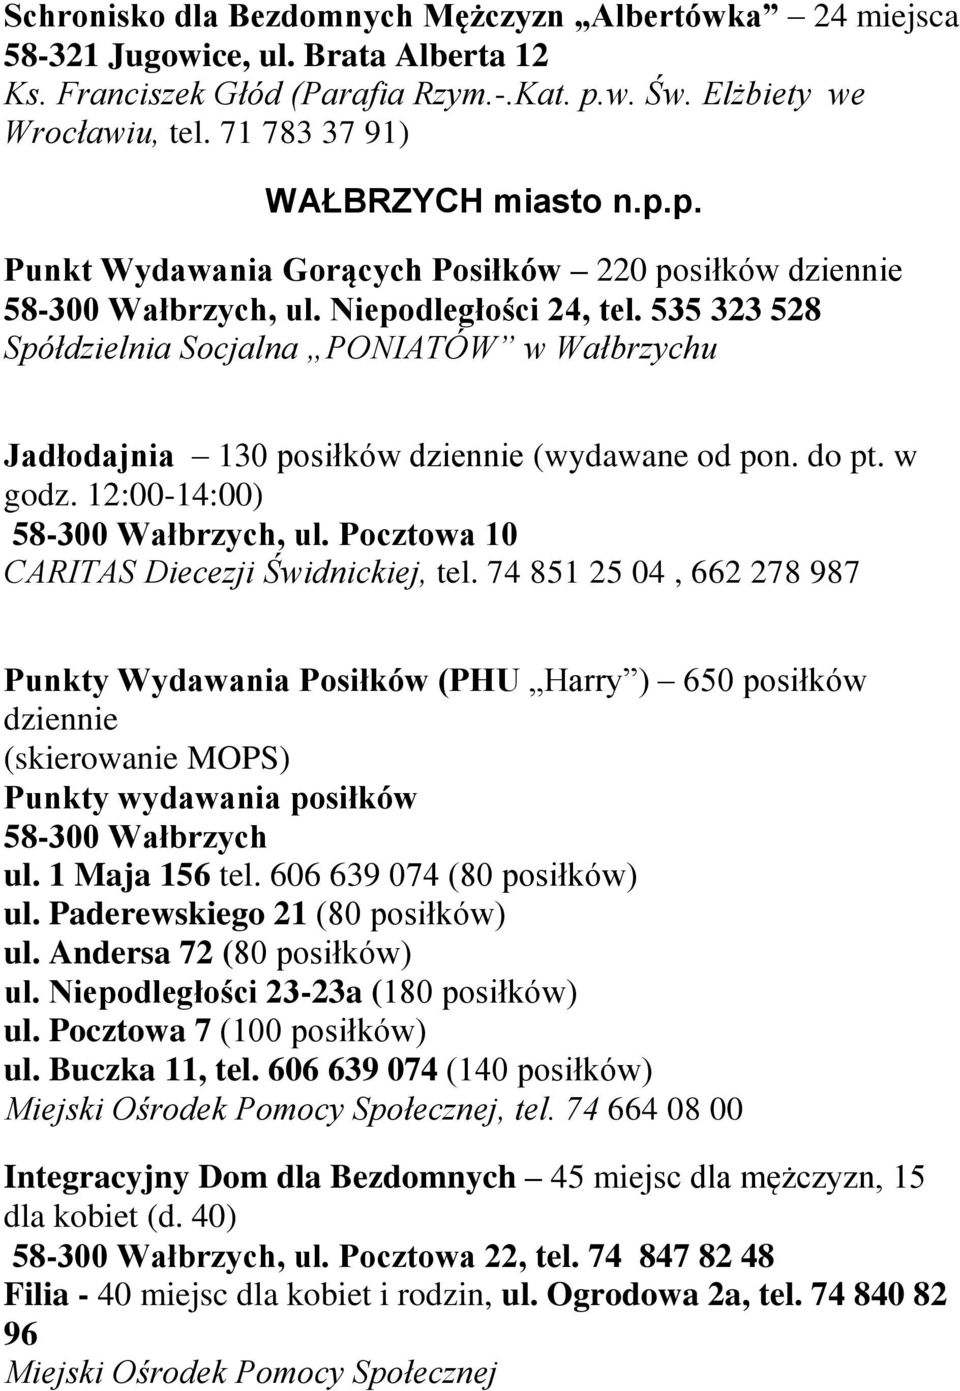 535 323 528 Spółdzielnia Socjalna PONIATÓW w Wałbrzychu Jadłodajnia 130 posiłków (wydawane od pon. do pt. w godz. 12:00-14:00) 58-300 Wałbrzych, ul. Pocztowa 10 CARITAS Diecezji Świdnickiej, tel.